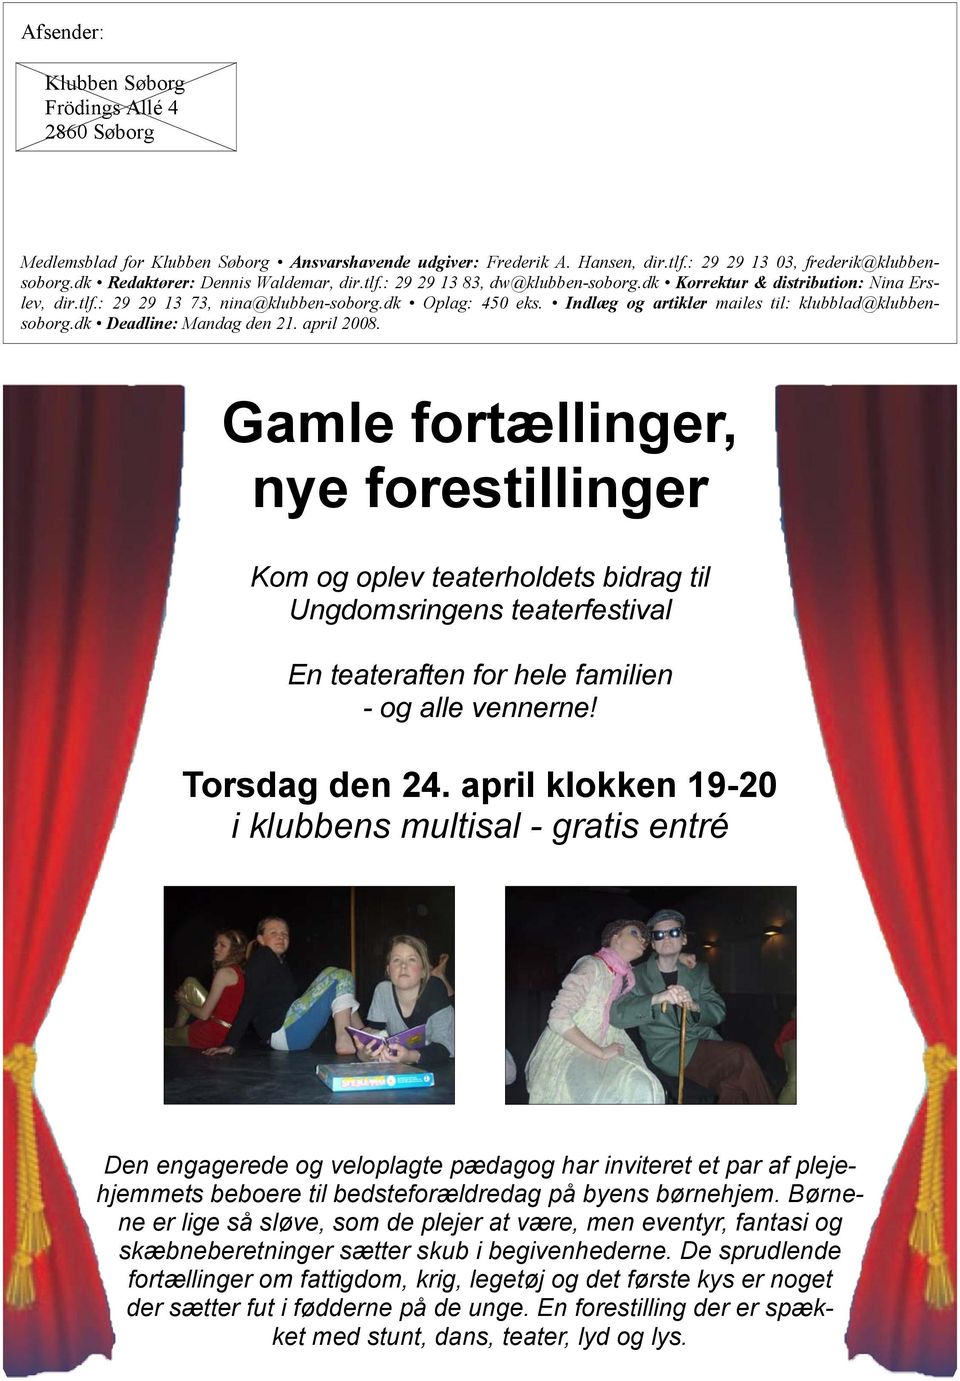 Indlæg og artikler mailes til: klubblad@klubbensoborg.dk Deadline: Mandag den 21. april 2008.